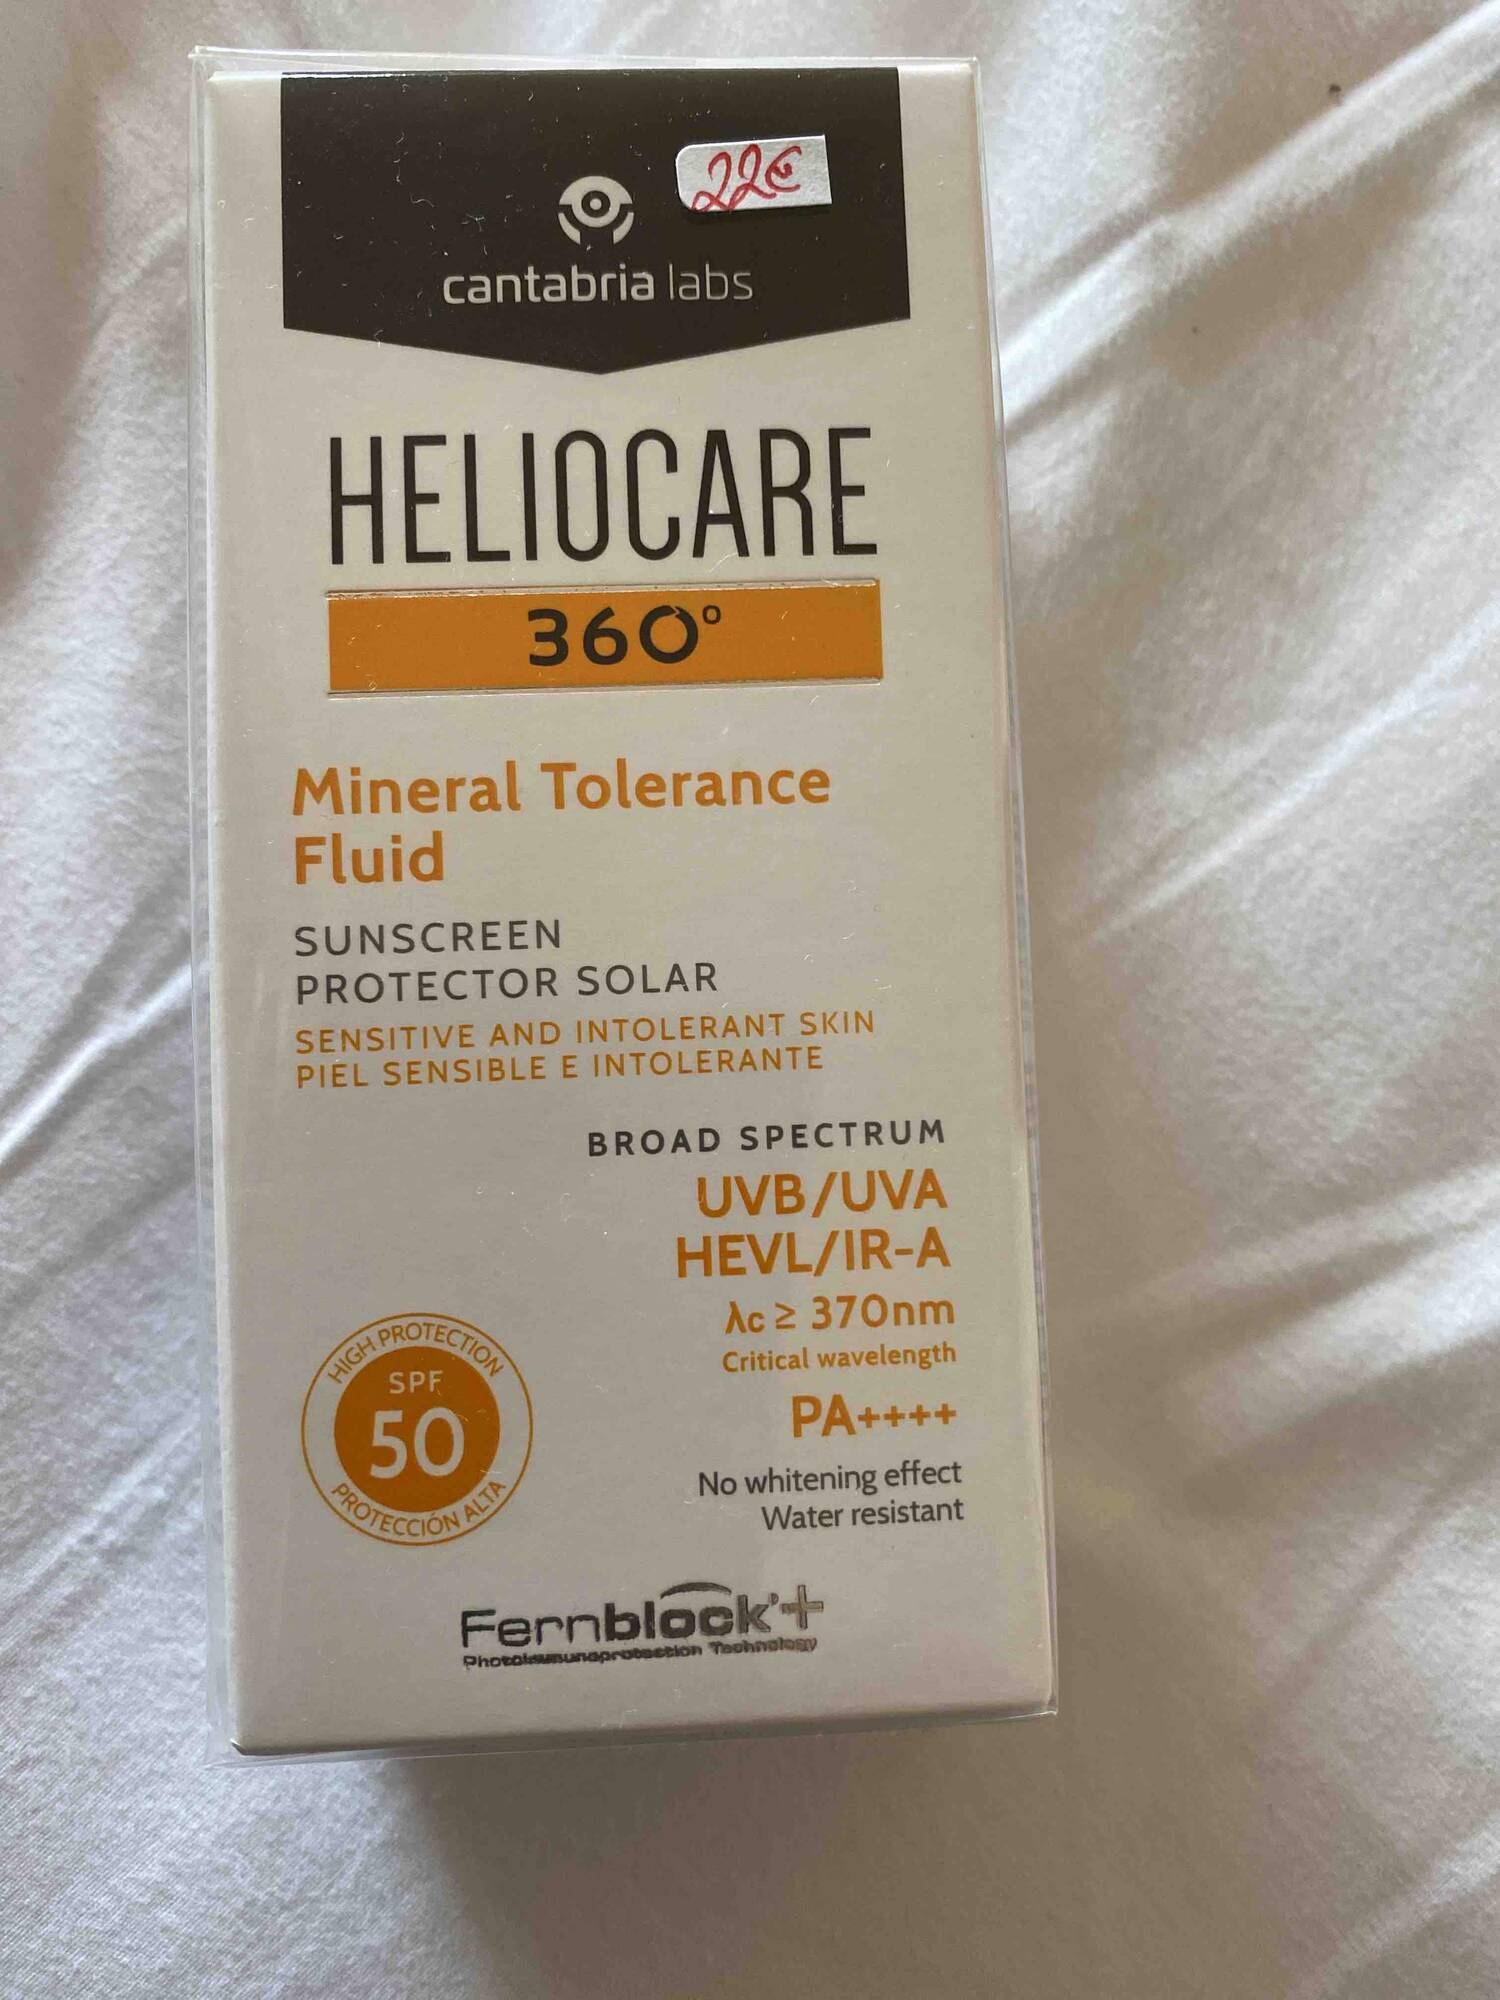 HELIOCARE - Mineral tolerance fluid - Sunscreen